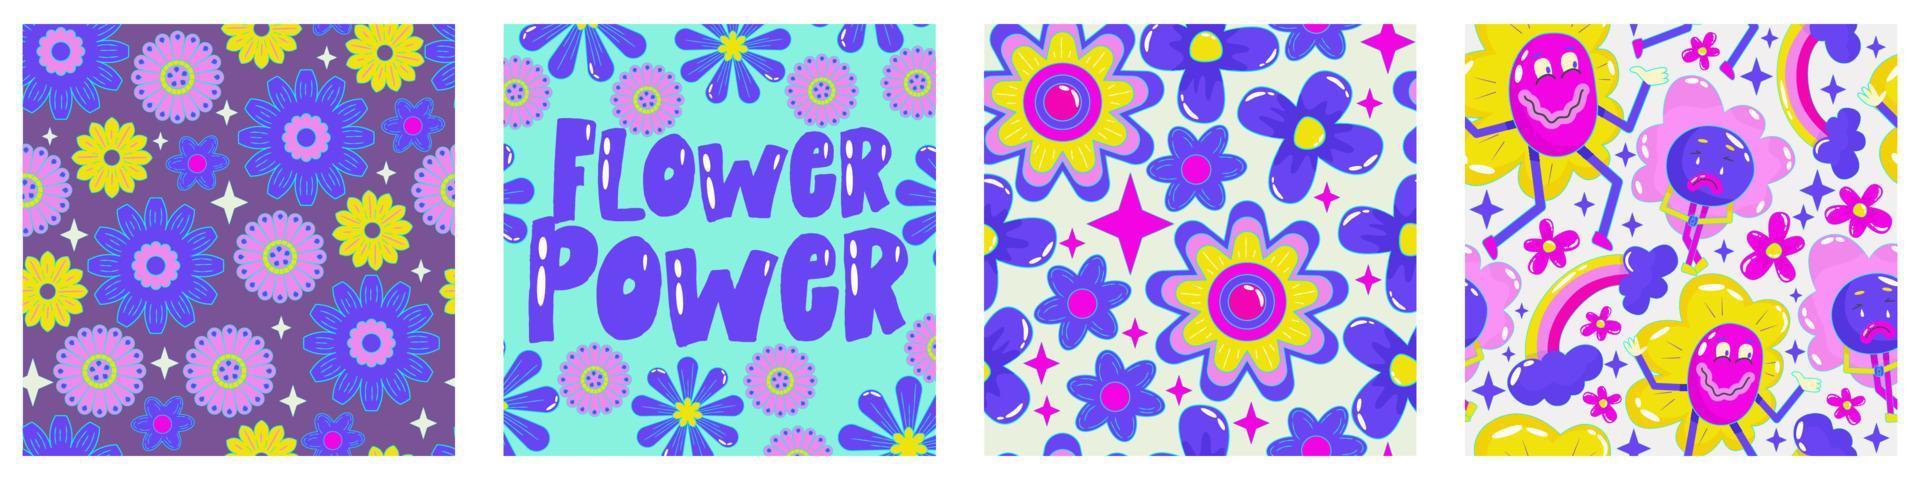 margherita flower power poster impostato per il design di stampa. modello psichedelico trippy astratto. forza dei fiori. illustrazione vettoriale divertente. poster retrò del 1990 per il design della maglietta.